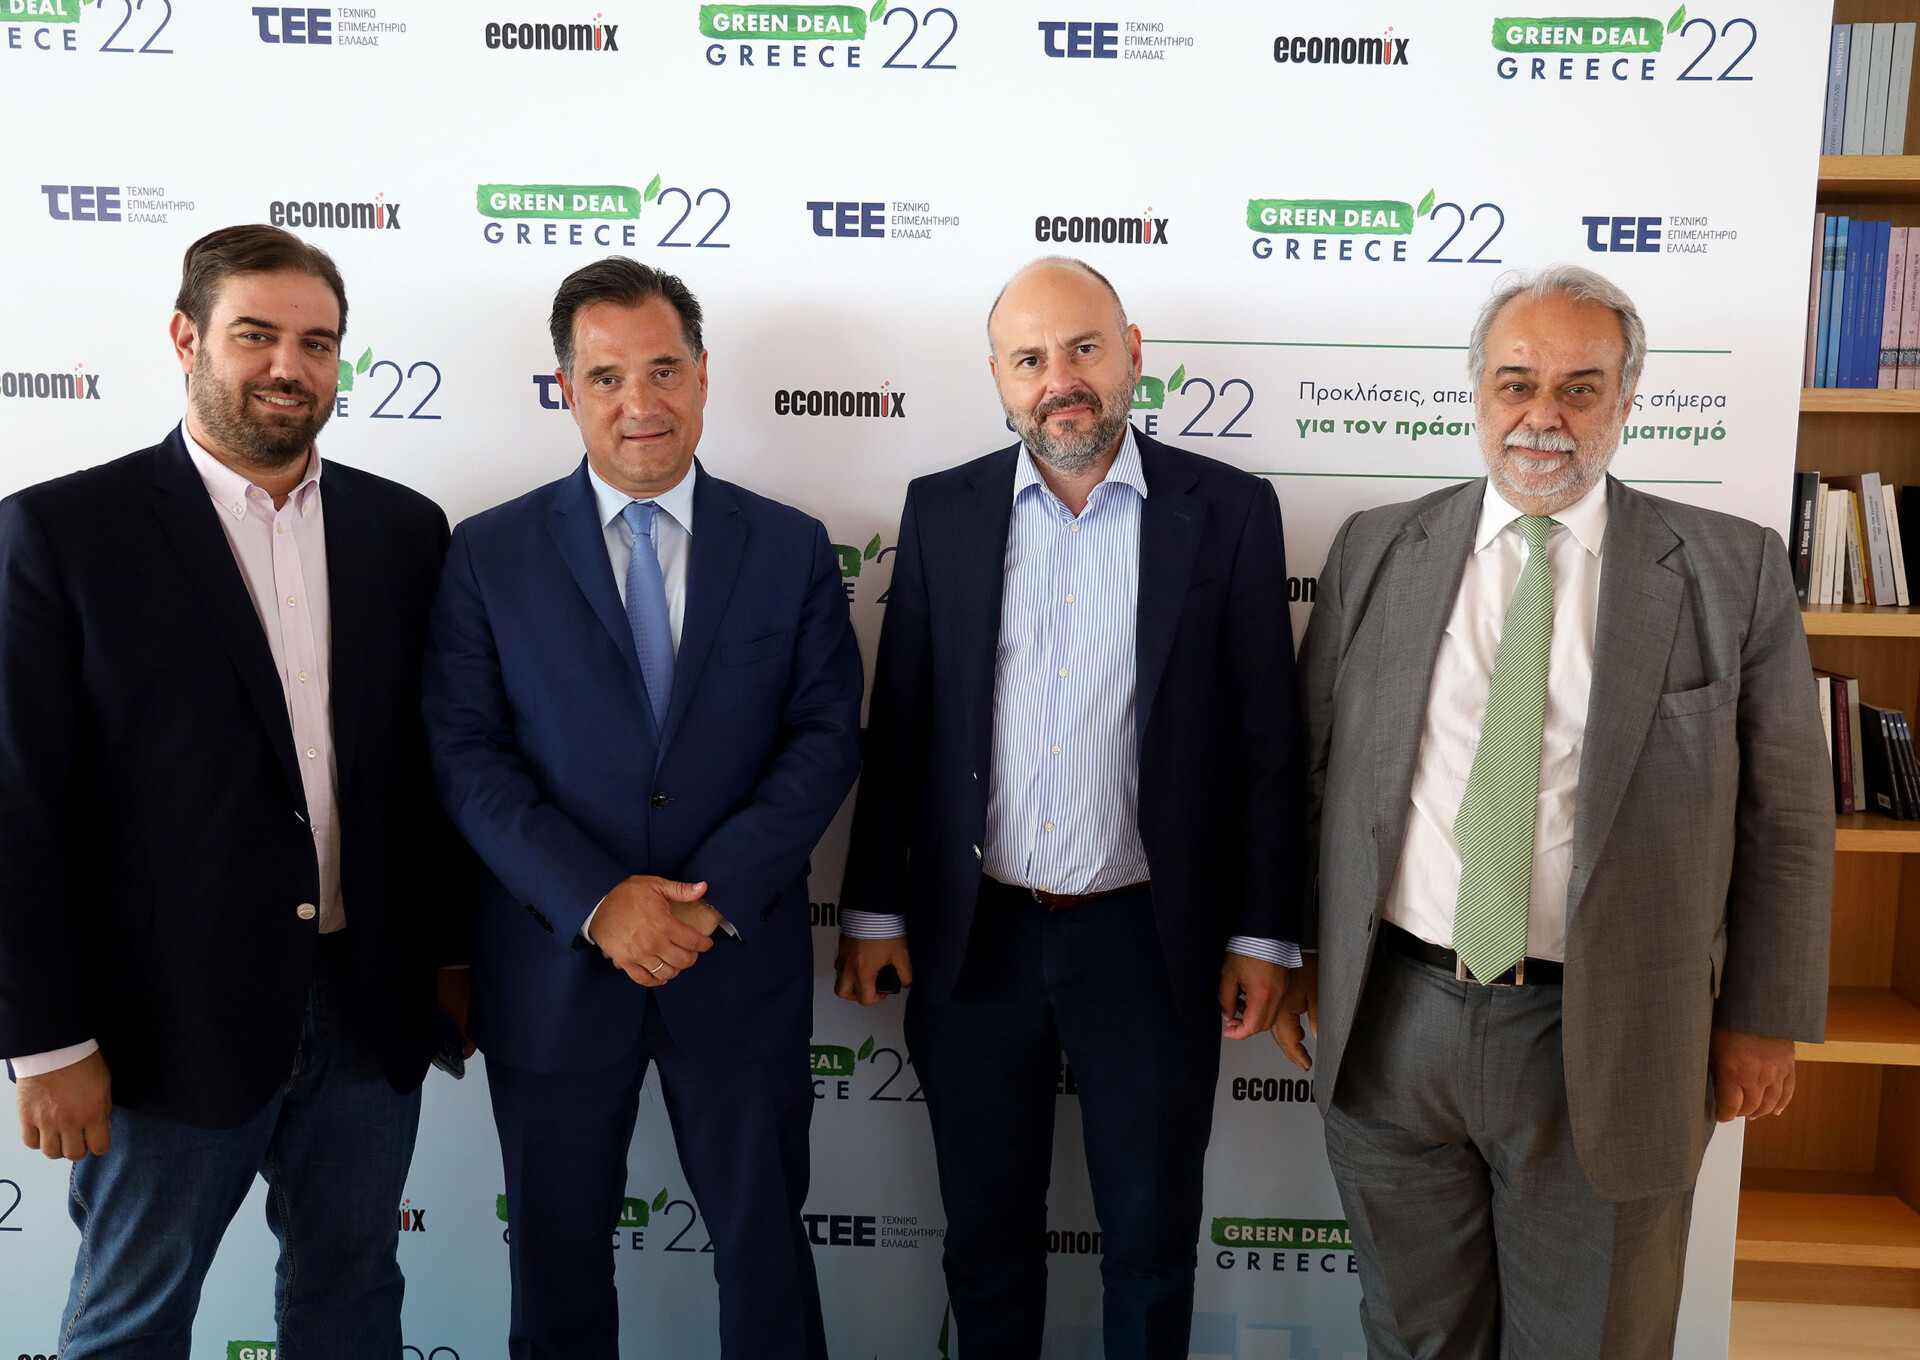 Στο συνέδριο «Green Deal Greece 2022» του ΤΕΕ ο Άδωνις Γεωργιάδης/ΔΤ